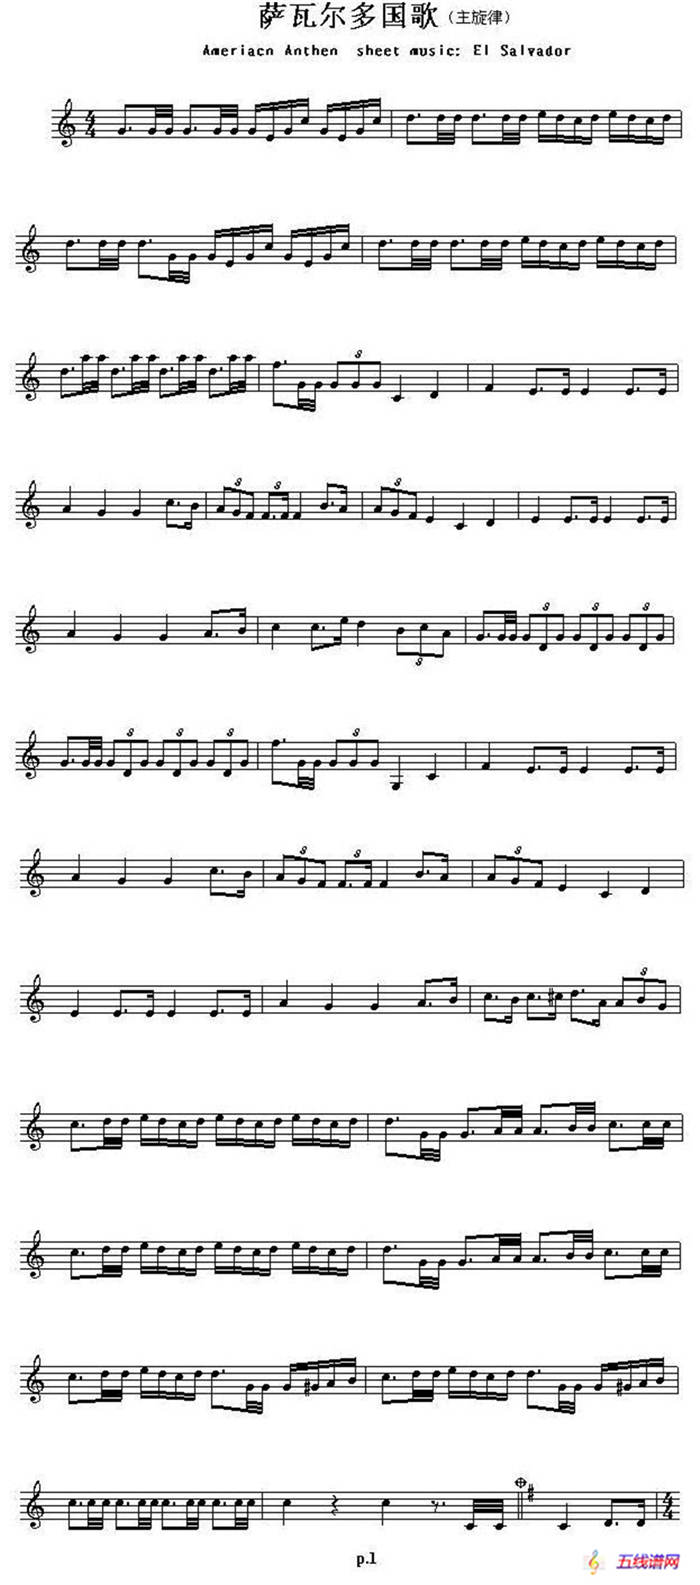 各国国歌主旋律：萨瓦尔多（Ameriacn Anthem sheet music:EL Salva）